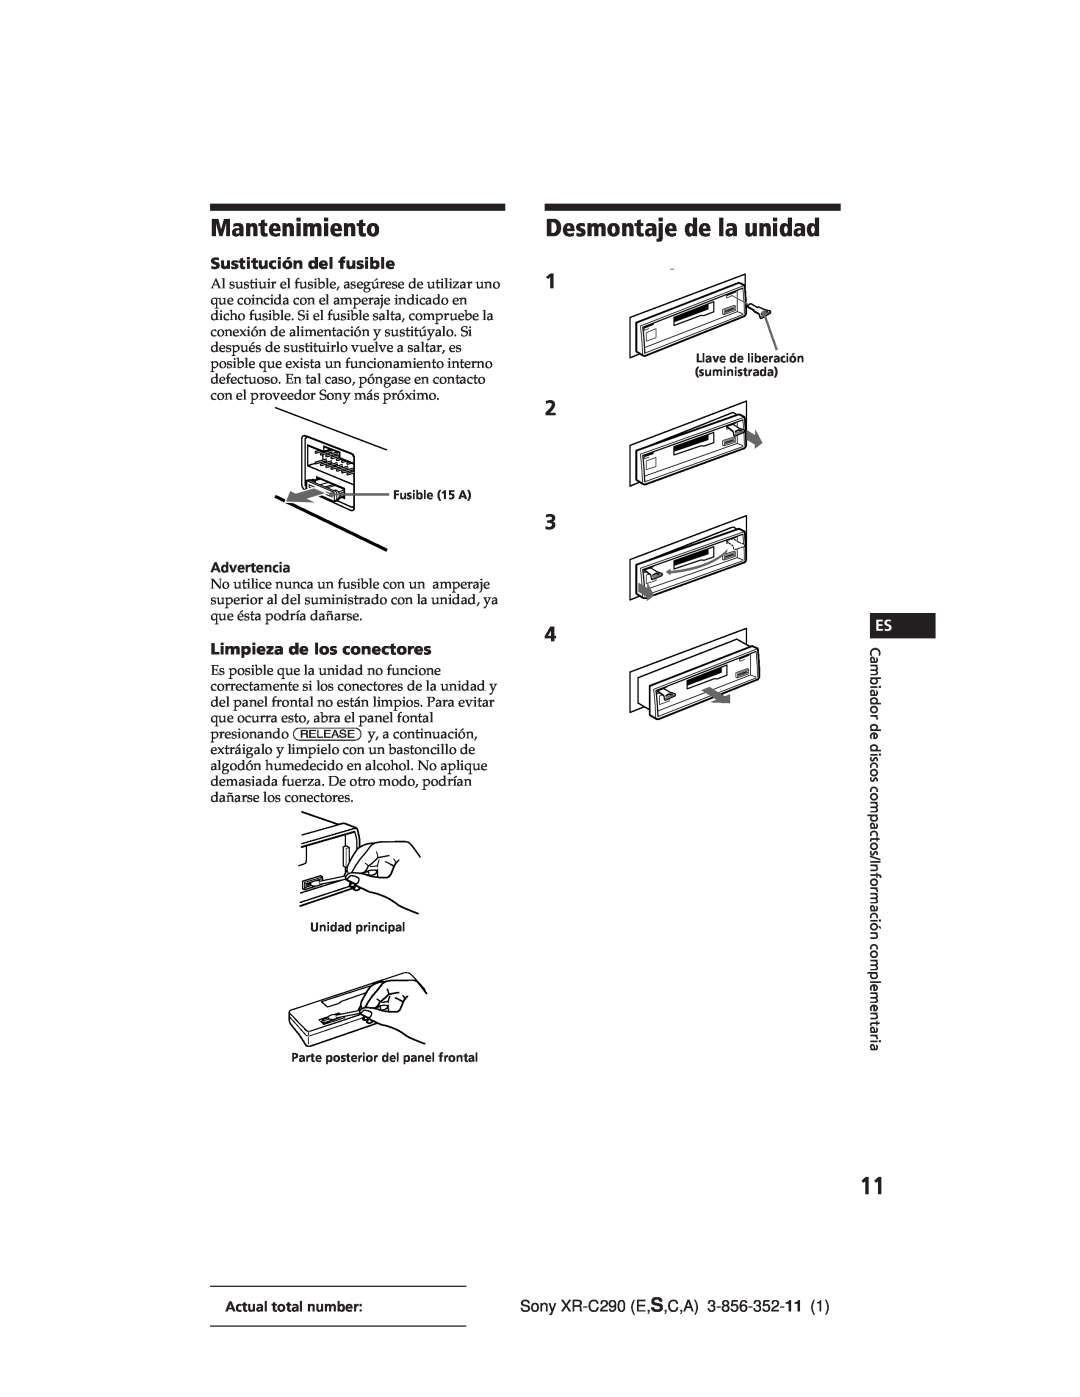 Sony XR-C290 manual Mantenimiento, Desmontaje de la unidad, Sustitución del fusible, Limpieza de los conectores 